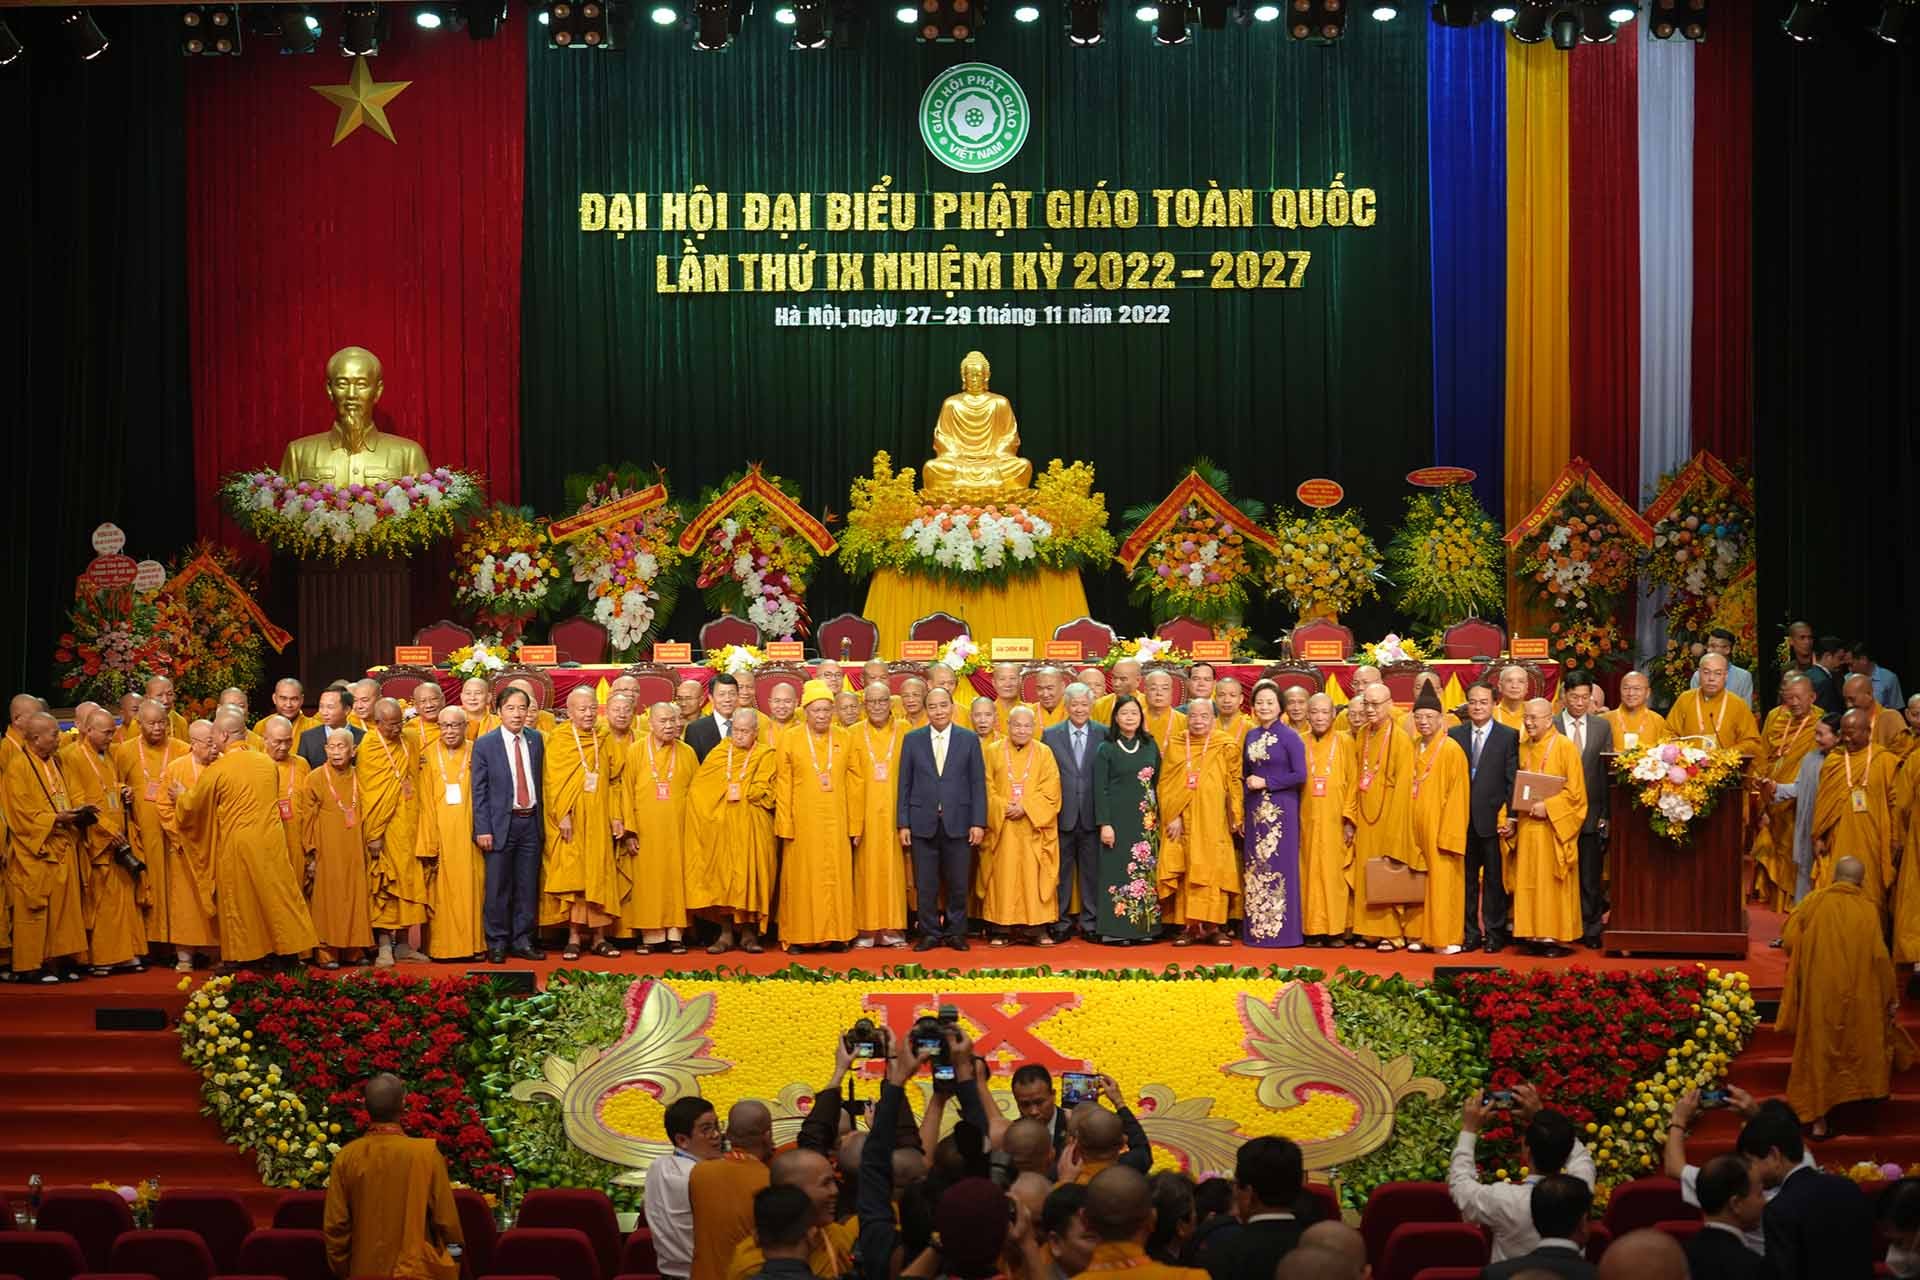 Chủ tịch nước Nguyễn Xuân Phúc cùng đại diện lãnh đạo Đảng, Chính phủ, Mặt trận Tổ quốc Việt Nam… chụp ảnh lưu niệm cùng các đại biểu Đại hội Phật giáo toàn quốc lần thứ IX. (Nguồn: BTC)